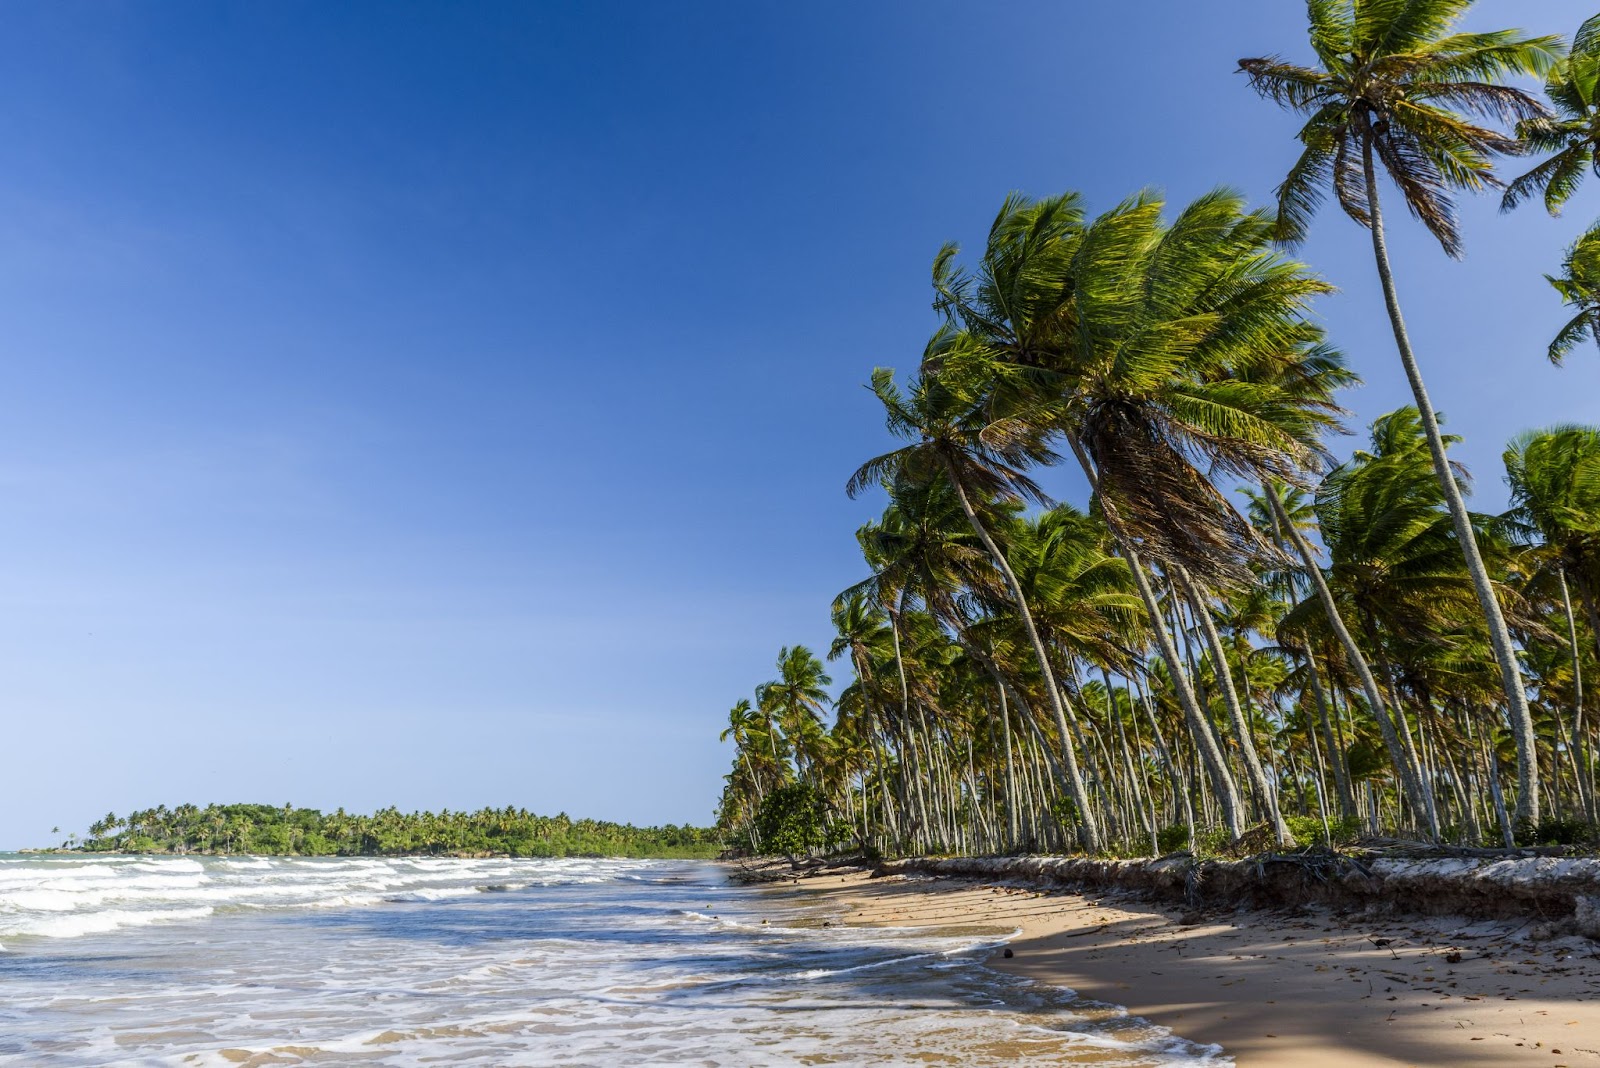 Mar com pequenas ondas formando espuma branca na pequena faixa de areia. Fila de coqueiros acompanhando a orla.